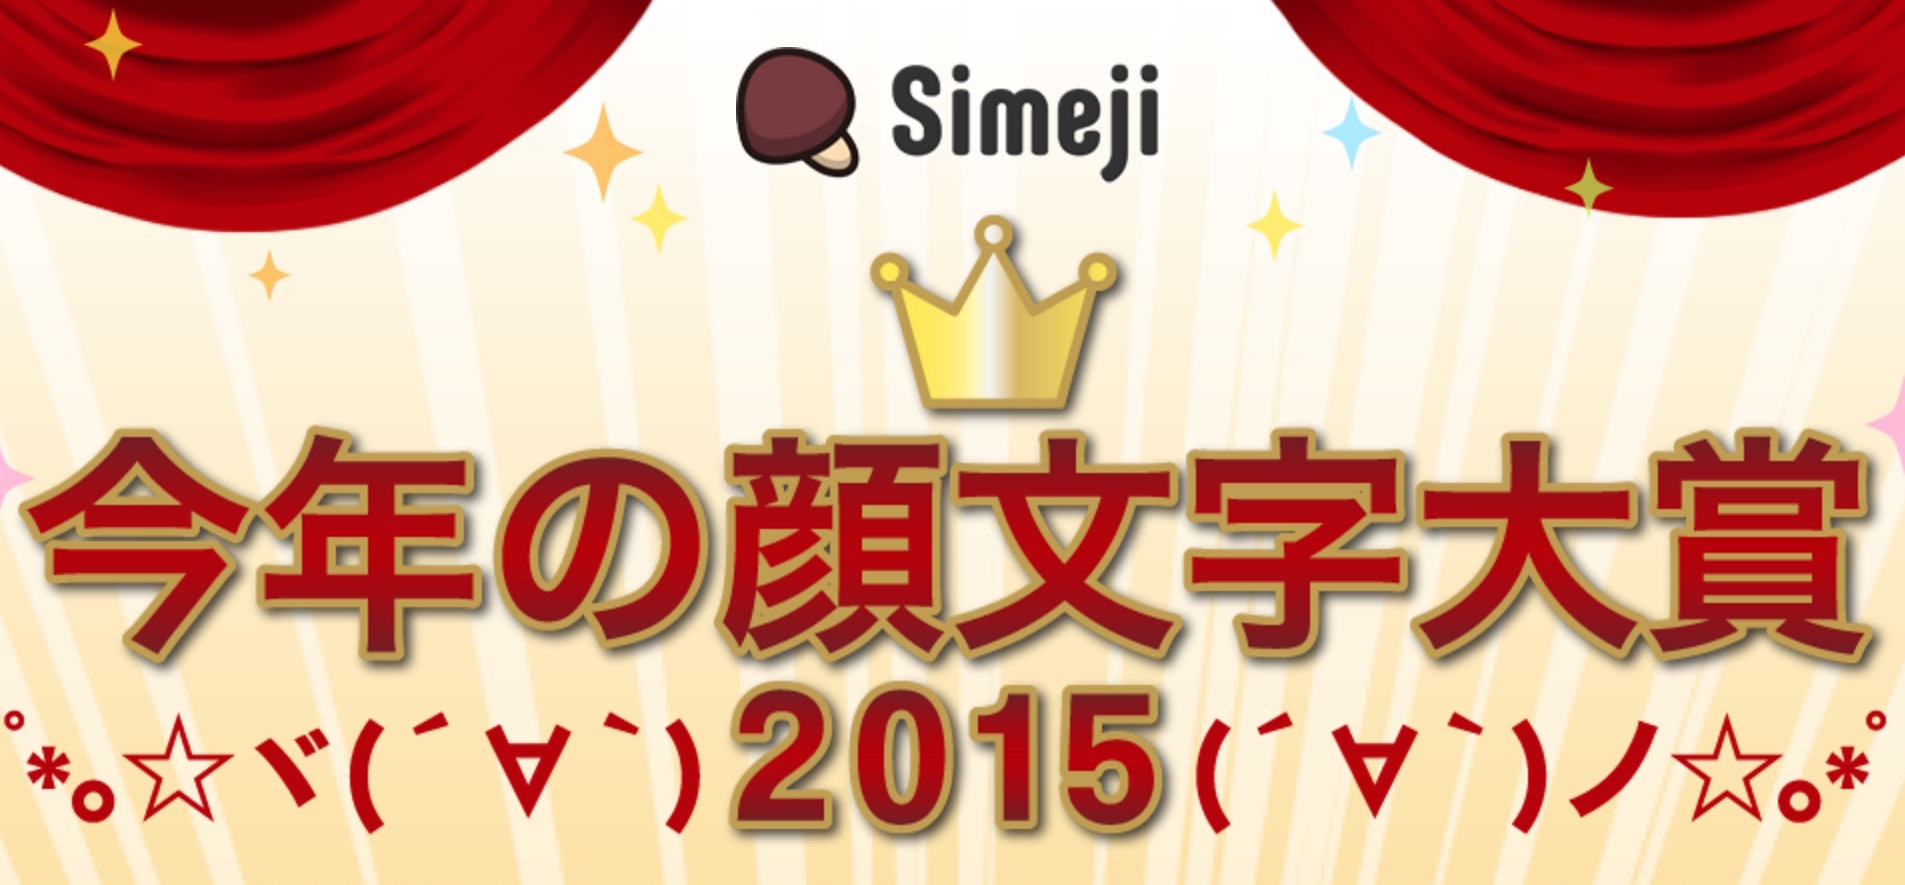 「今年の顔文字大賞2015」は真顔( ˙-˙ )に決定、Simejiが発表